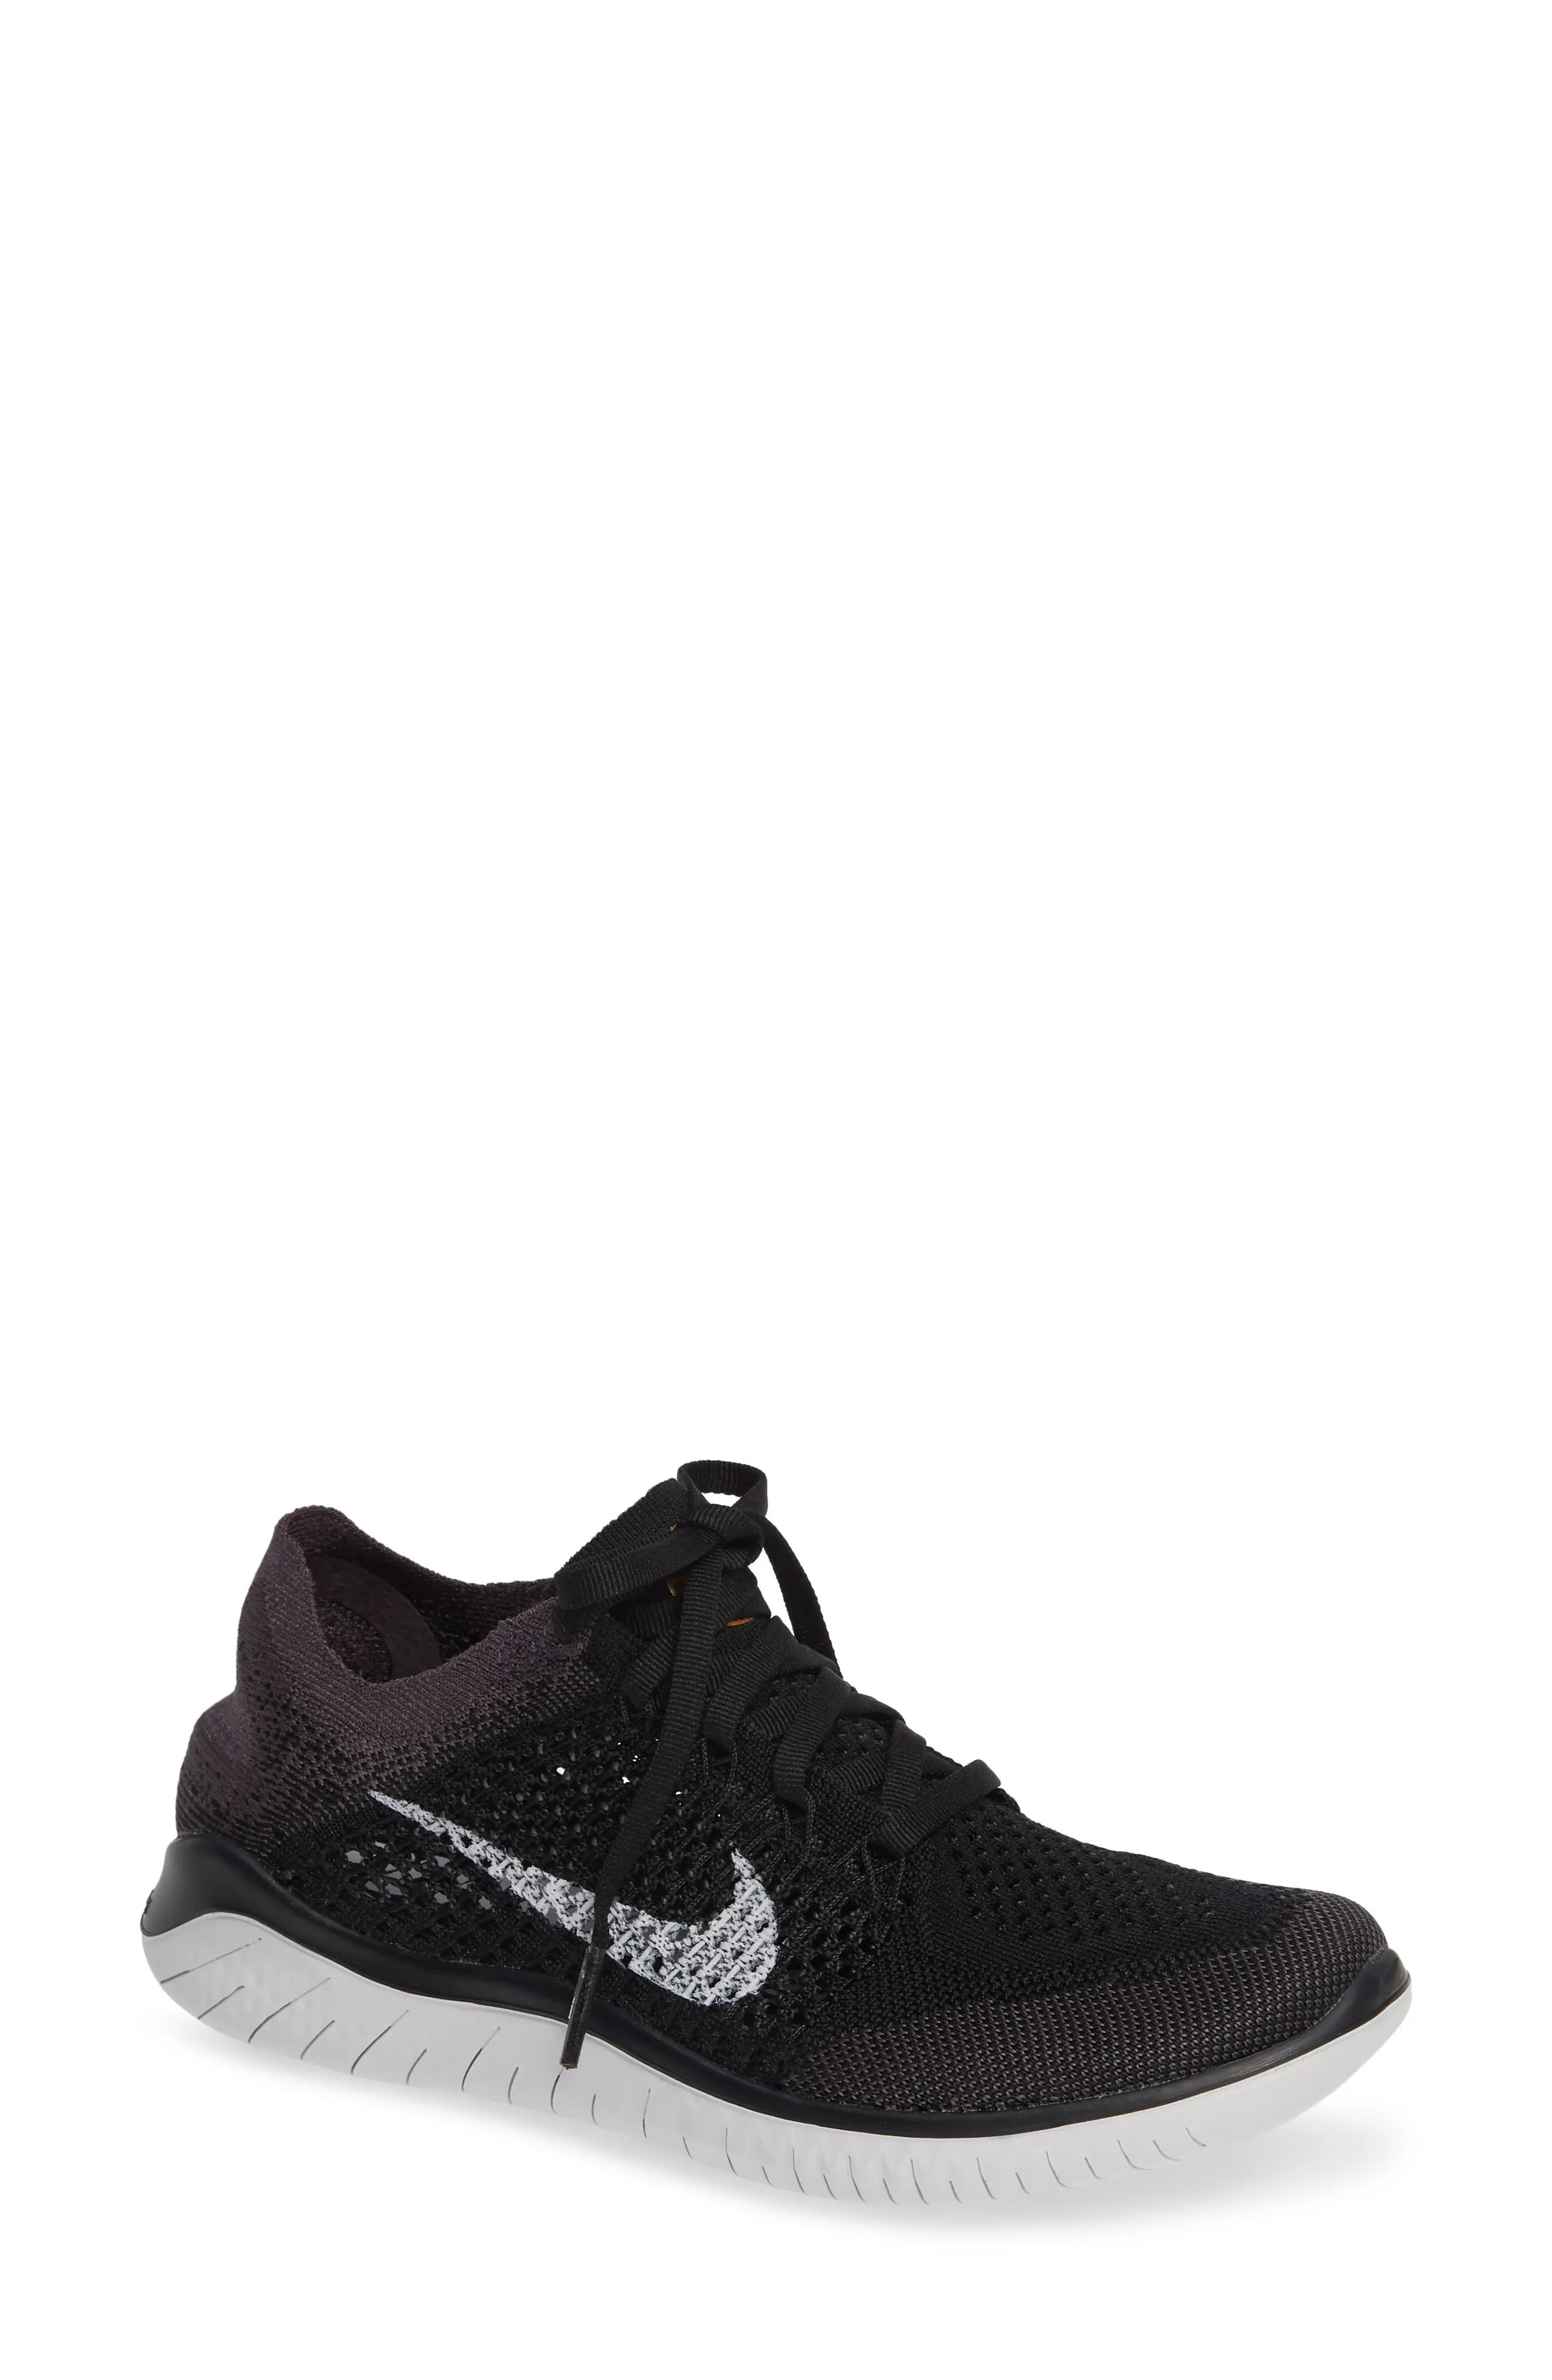 Women's Nike Free Rn Flyknit 2018 Running Shoe, Size 10 M - Black | Nordstrom